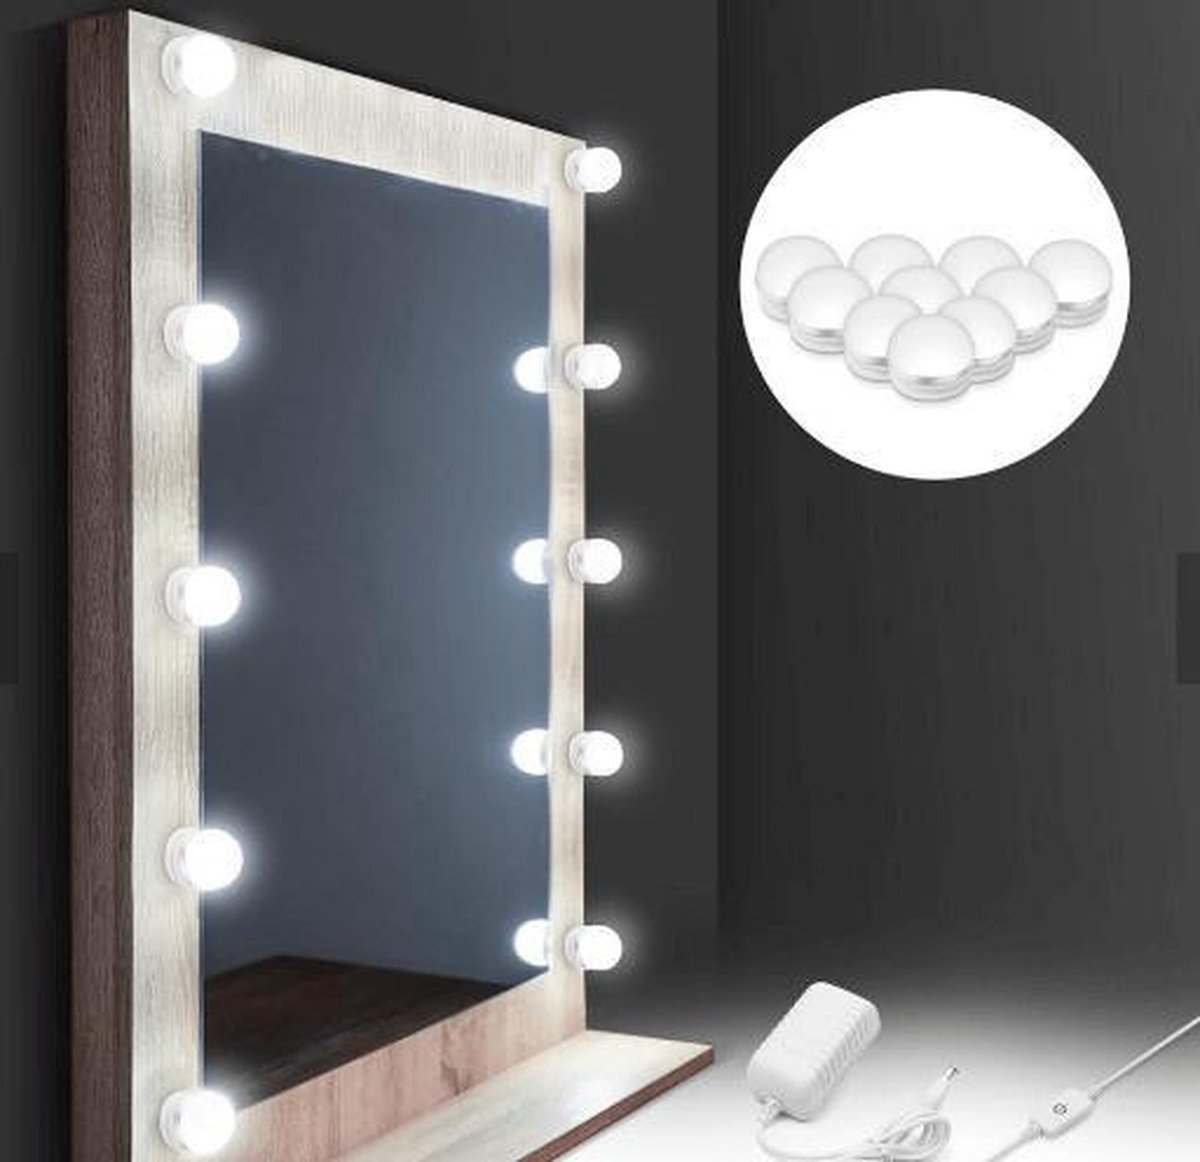 Vanity mirror Light ( Ampoules led miroir ) fournit à votre pièce une